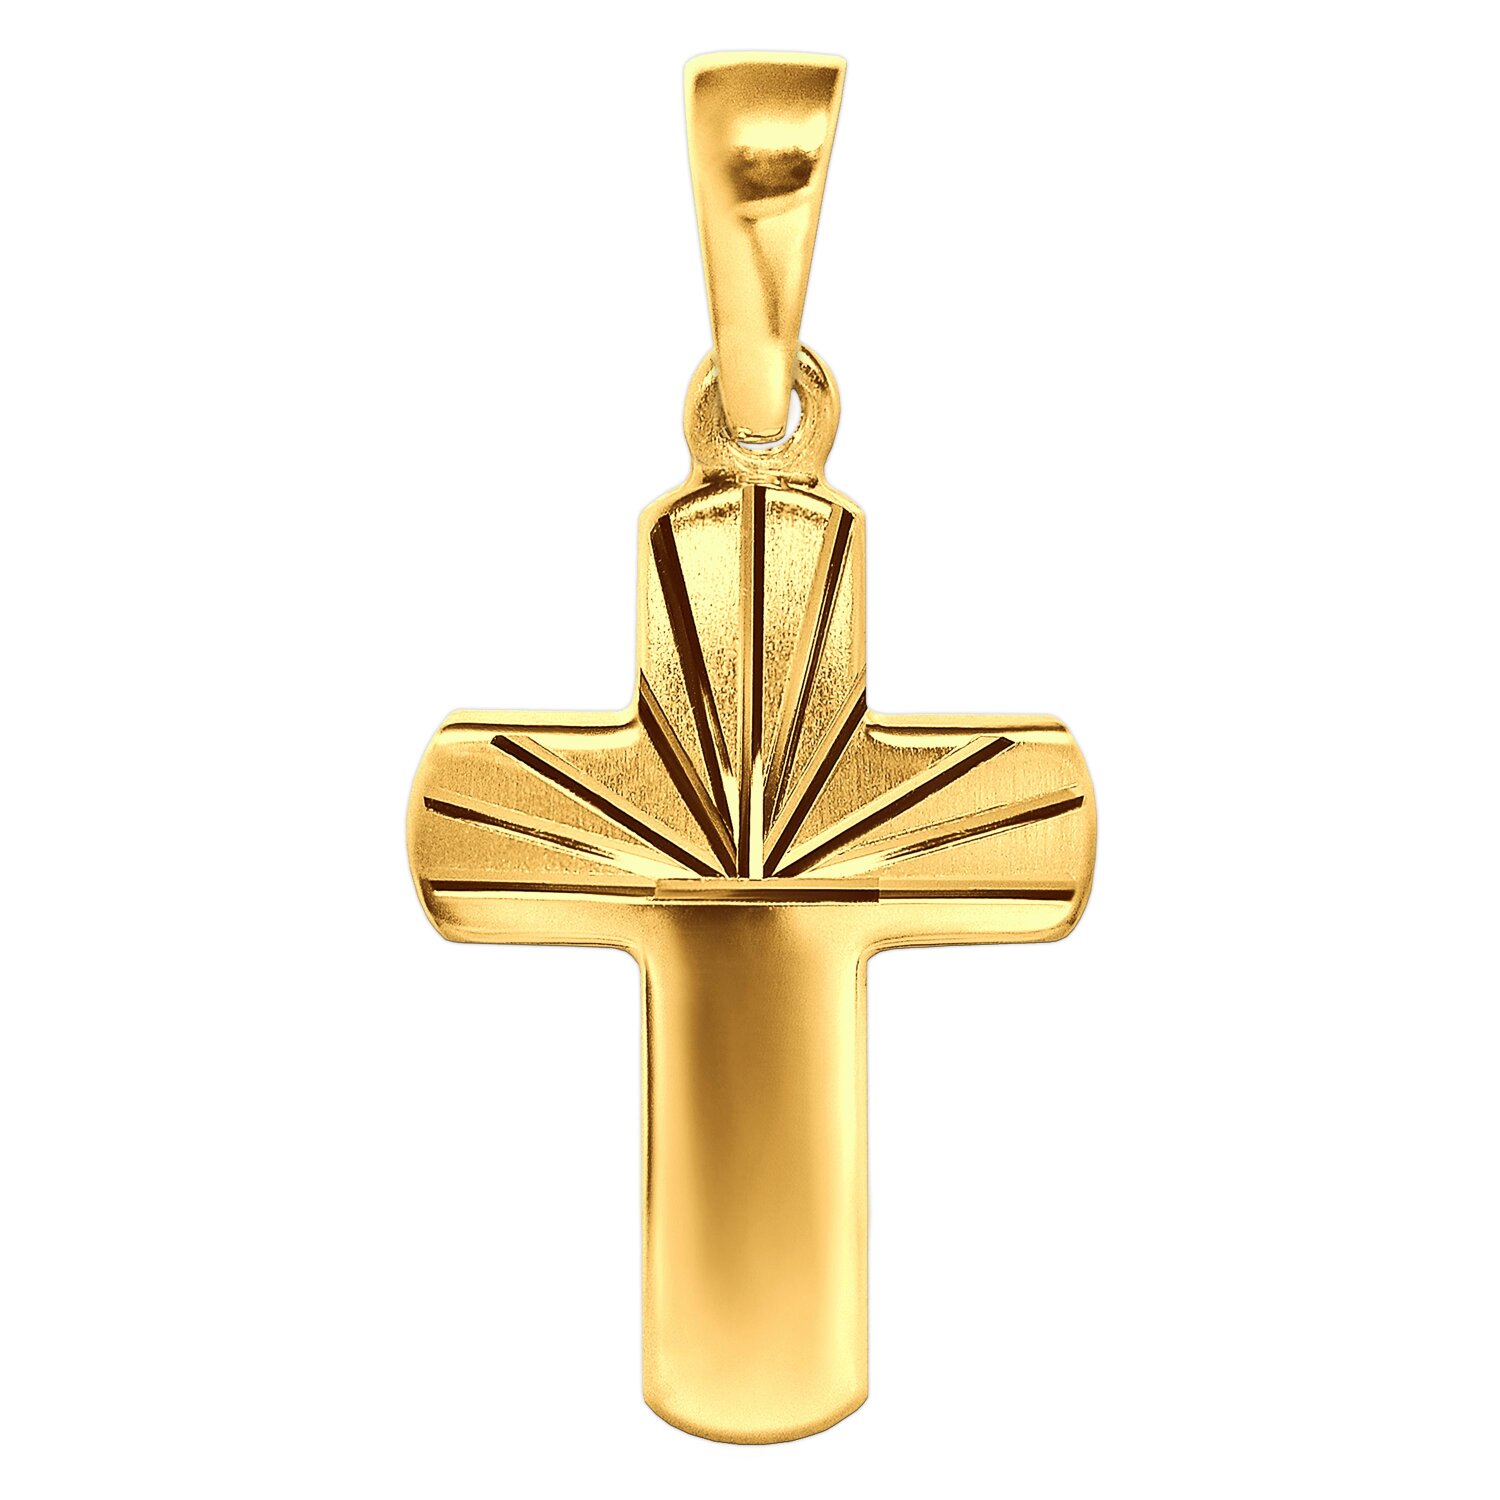 Goldenes Kreuz 15 mm oberseitig matt diamantiert mittig zulaufend 333 Gold